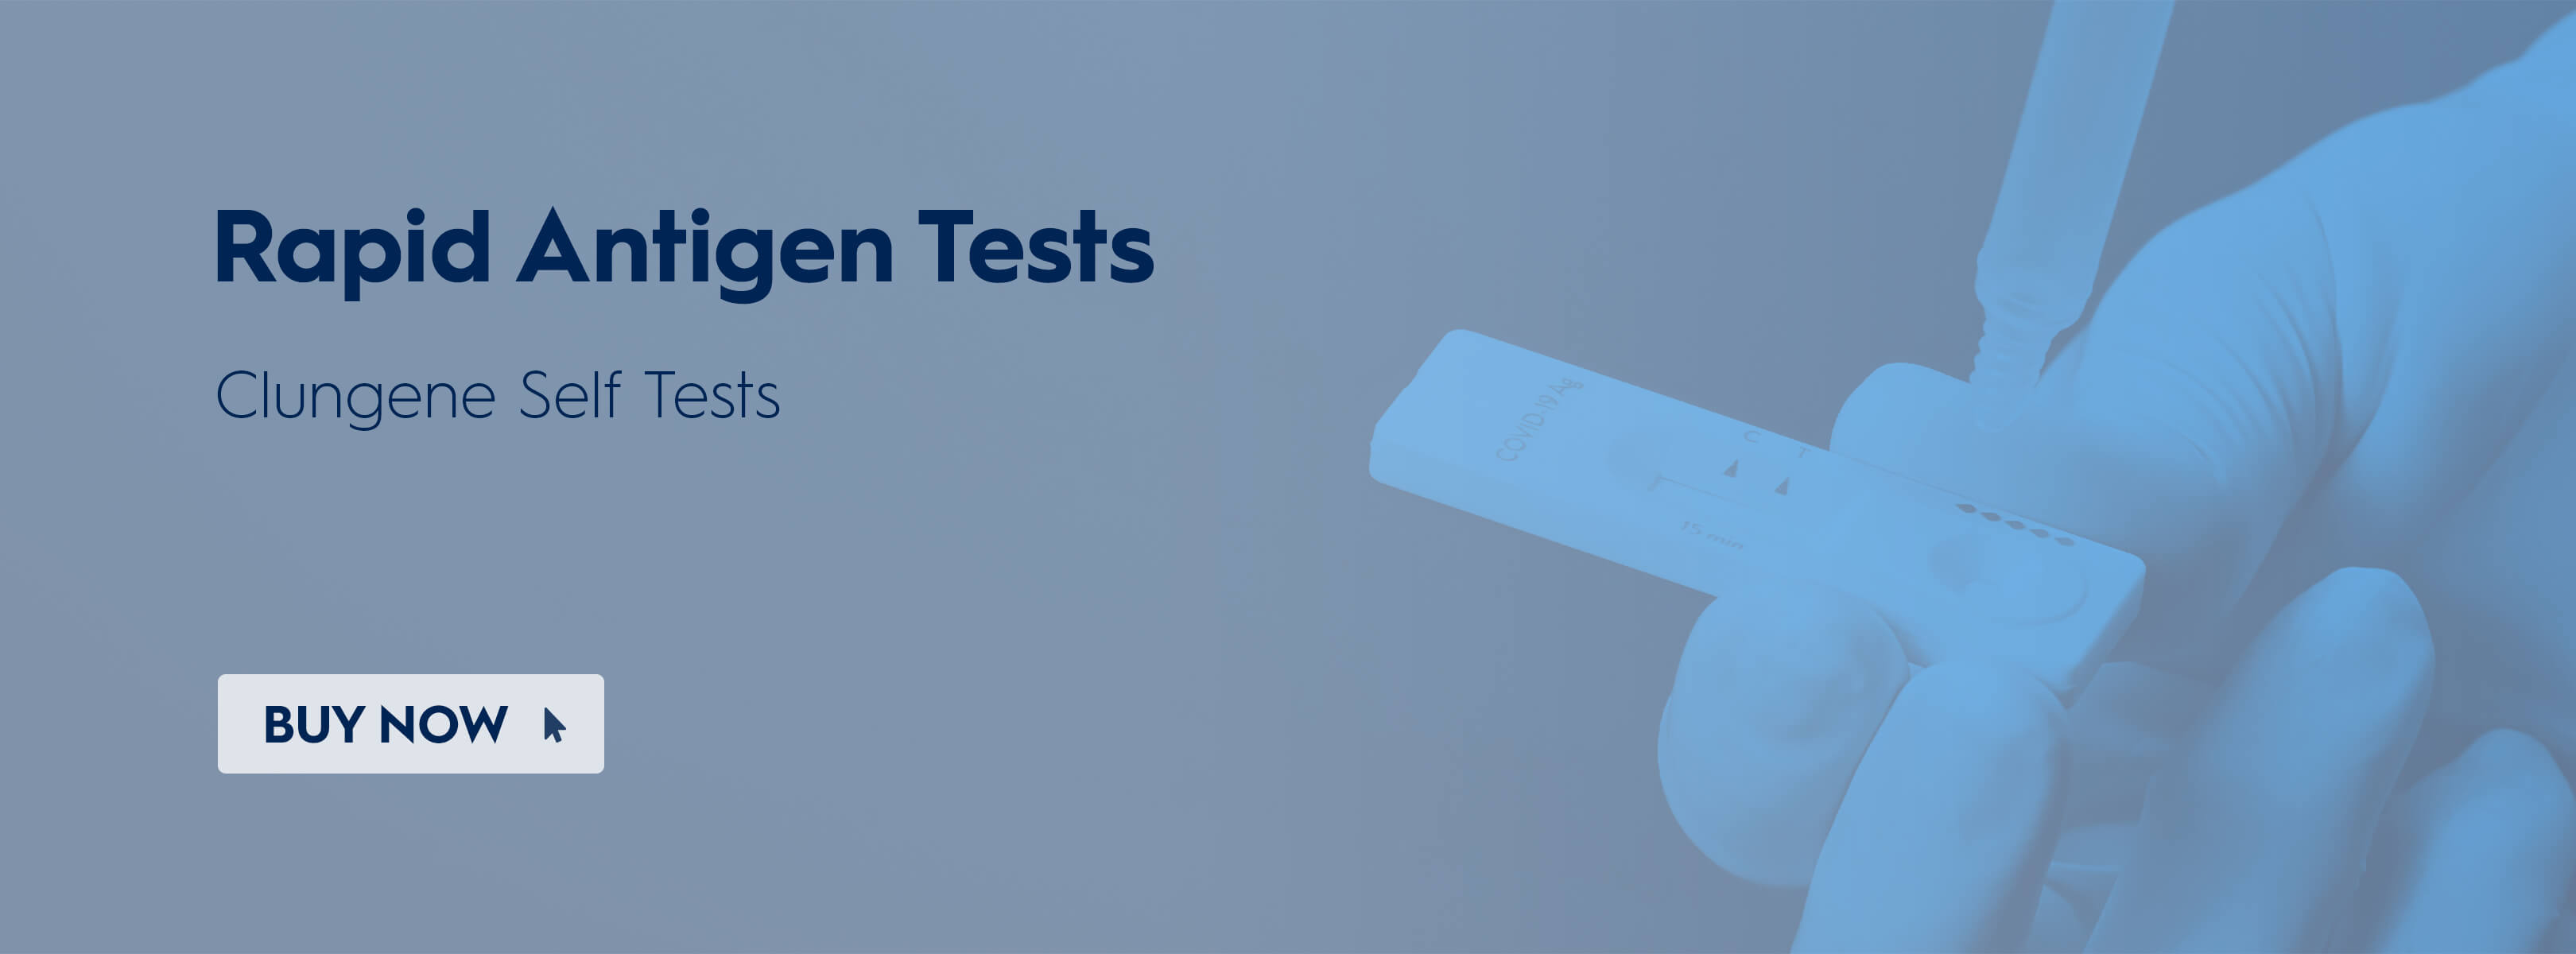 Clungene Rapid Antigen Tests